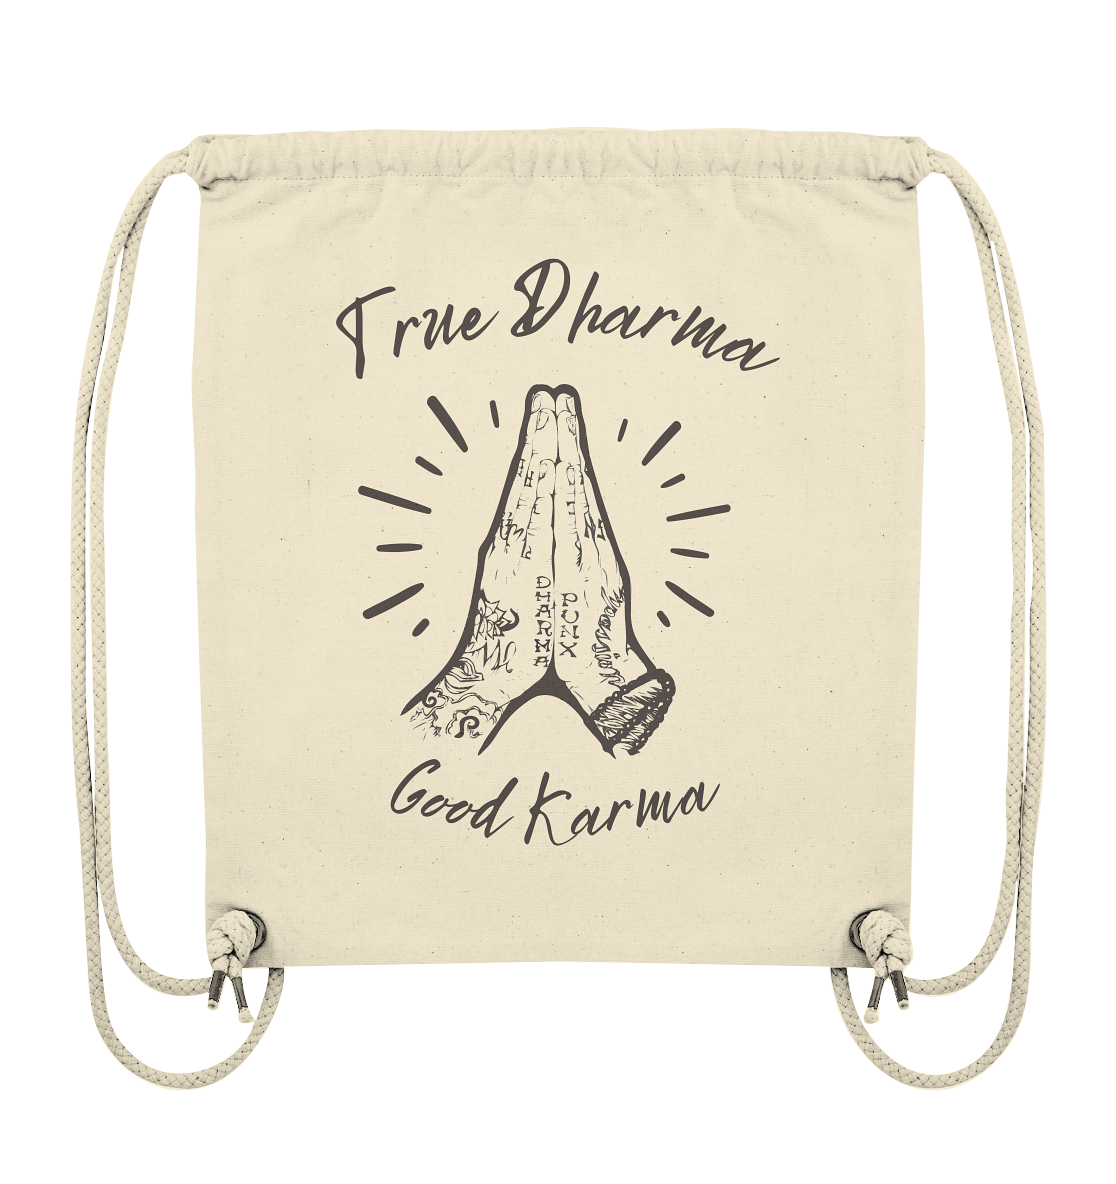 True Dharma Good Karma | Premium Organic Gym Bag